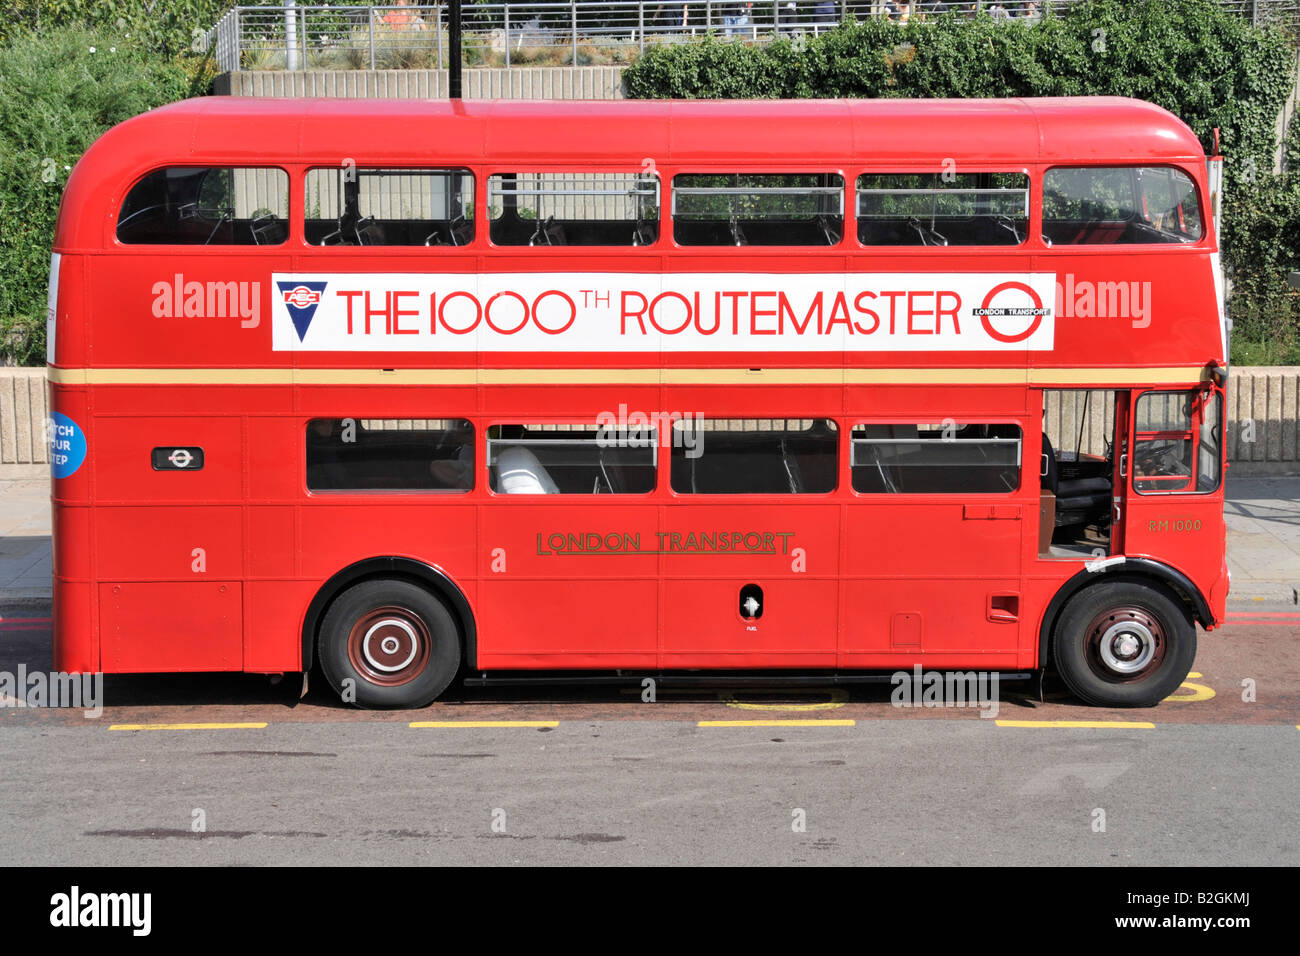 Fait partie du patrimoine historique de London transport un classique rouge double decker London AEC Routemaster avec une affiche commémorant le 1000e bus Angleterre Royaume-Uni Banque D'Images